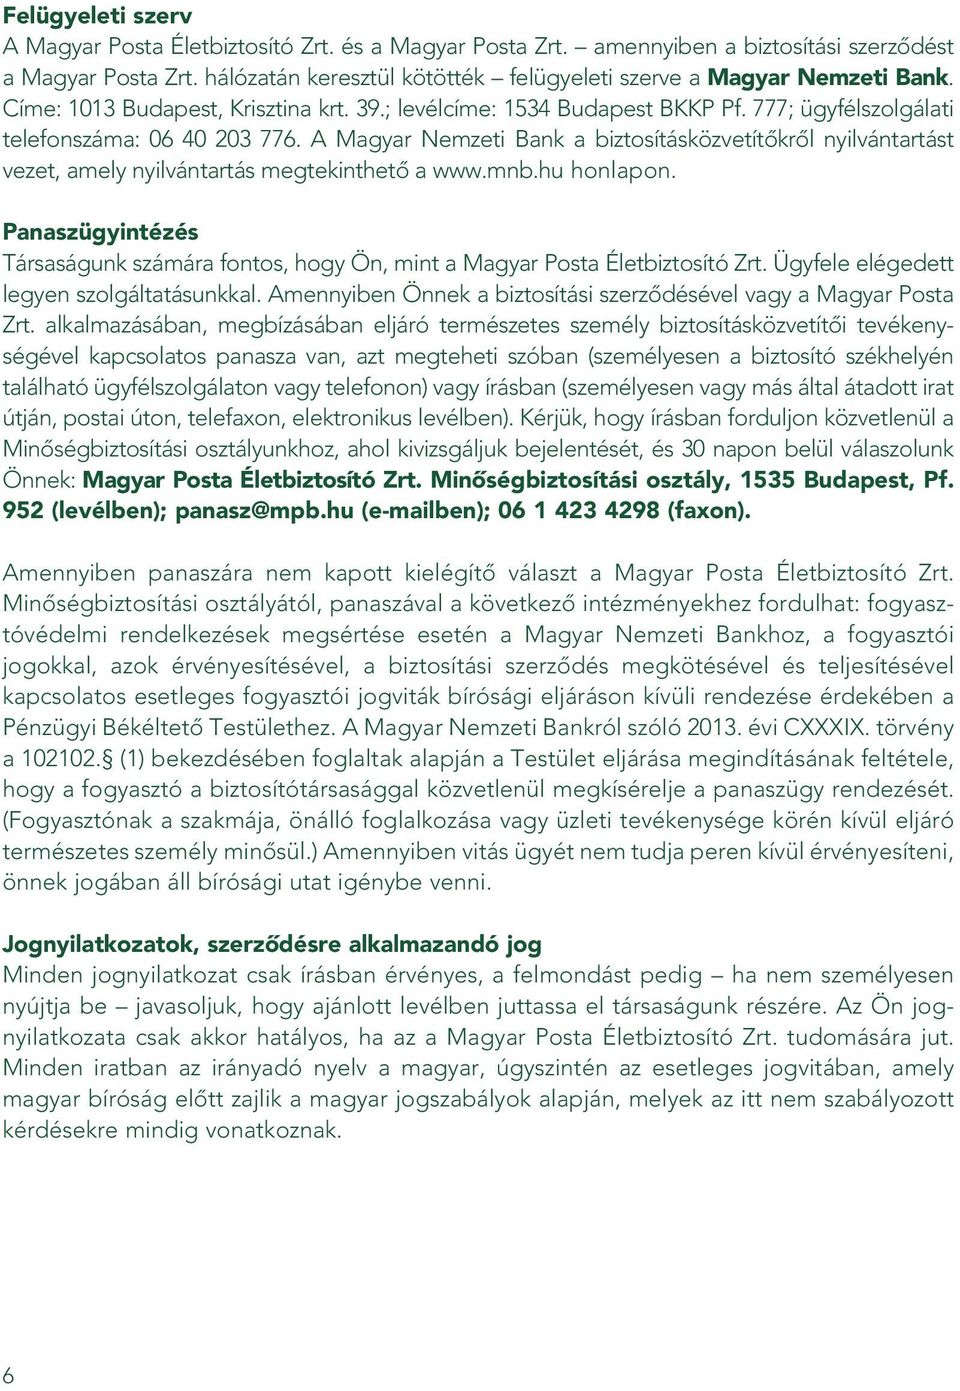 A Magyar Nemzeti Bank a biztosításközvetítôkrôl nyilvántartást vezet, amely nyilvántartás megtekinthetô a www.mnb.hu honlapon.